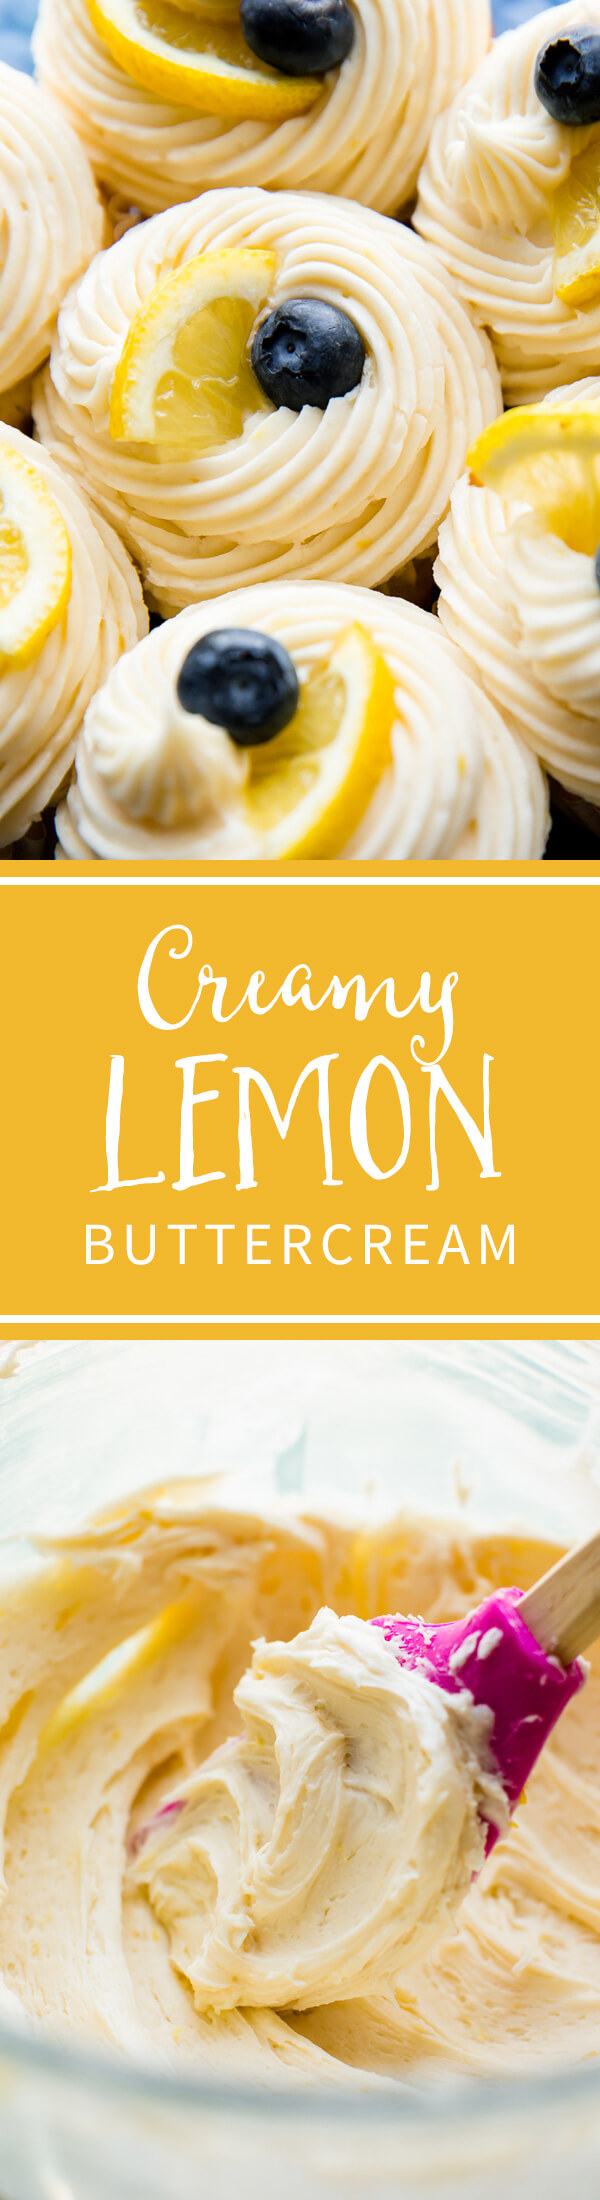 Le glaçage à la crème au beurre crémeux au citron est si facile à faire et à pipe! Goûte le meilleur sur les cupcakes au citron! Recette sur sallysbakingaddiction.com